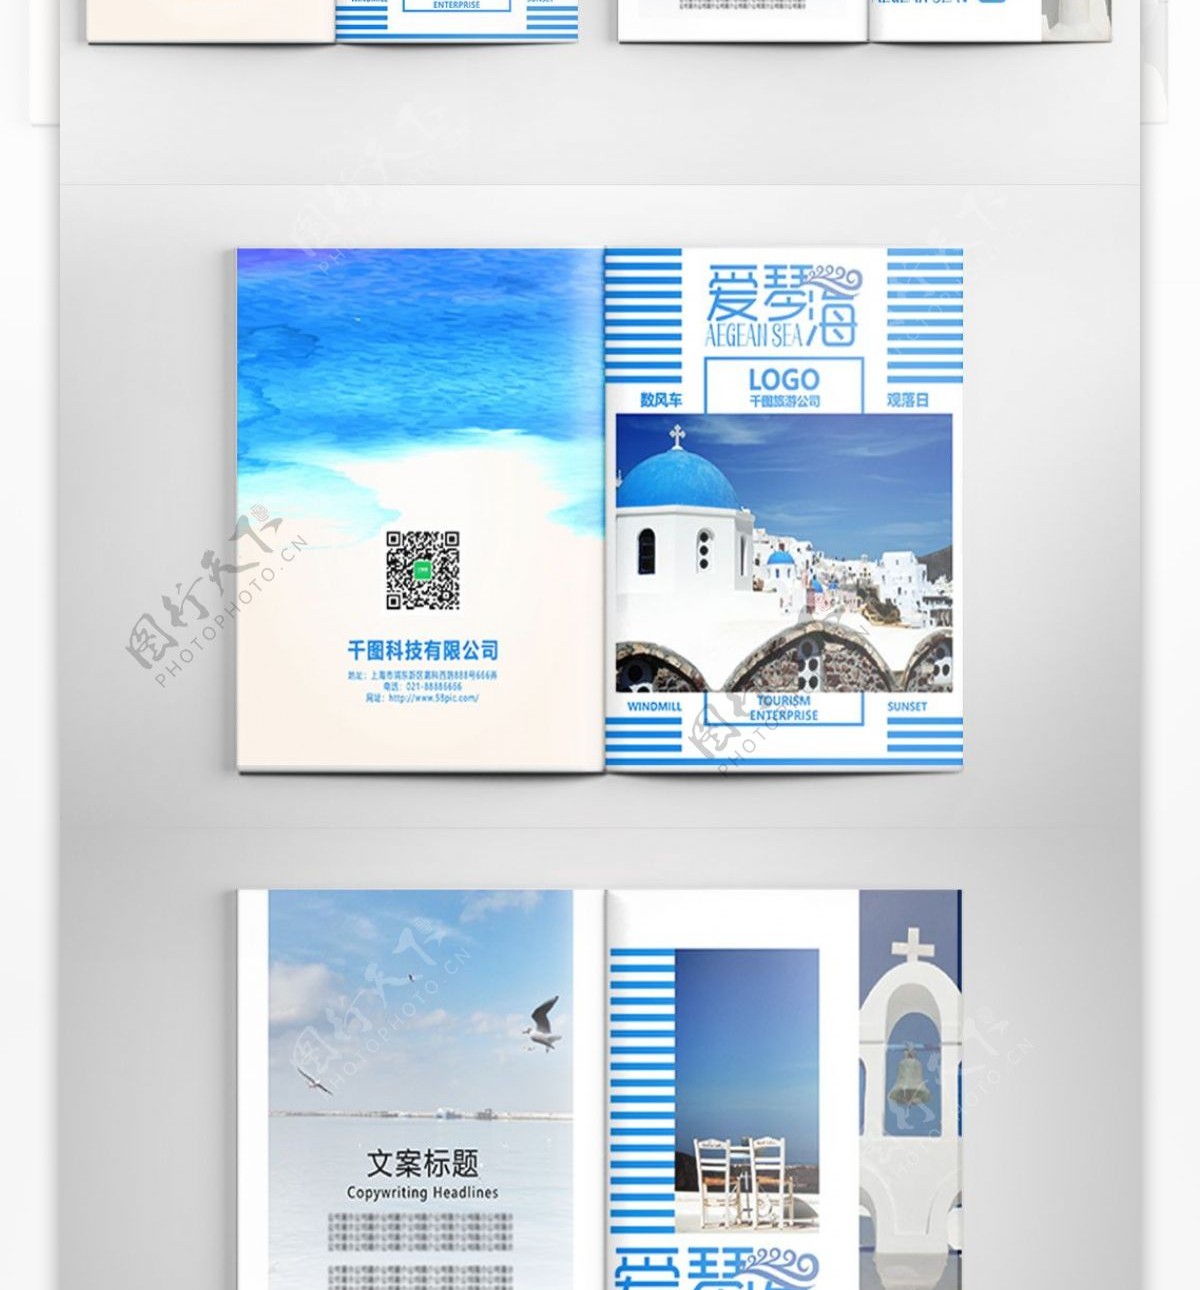 蓝色唯美爱琴海旅游宣传画册